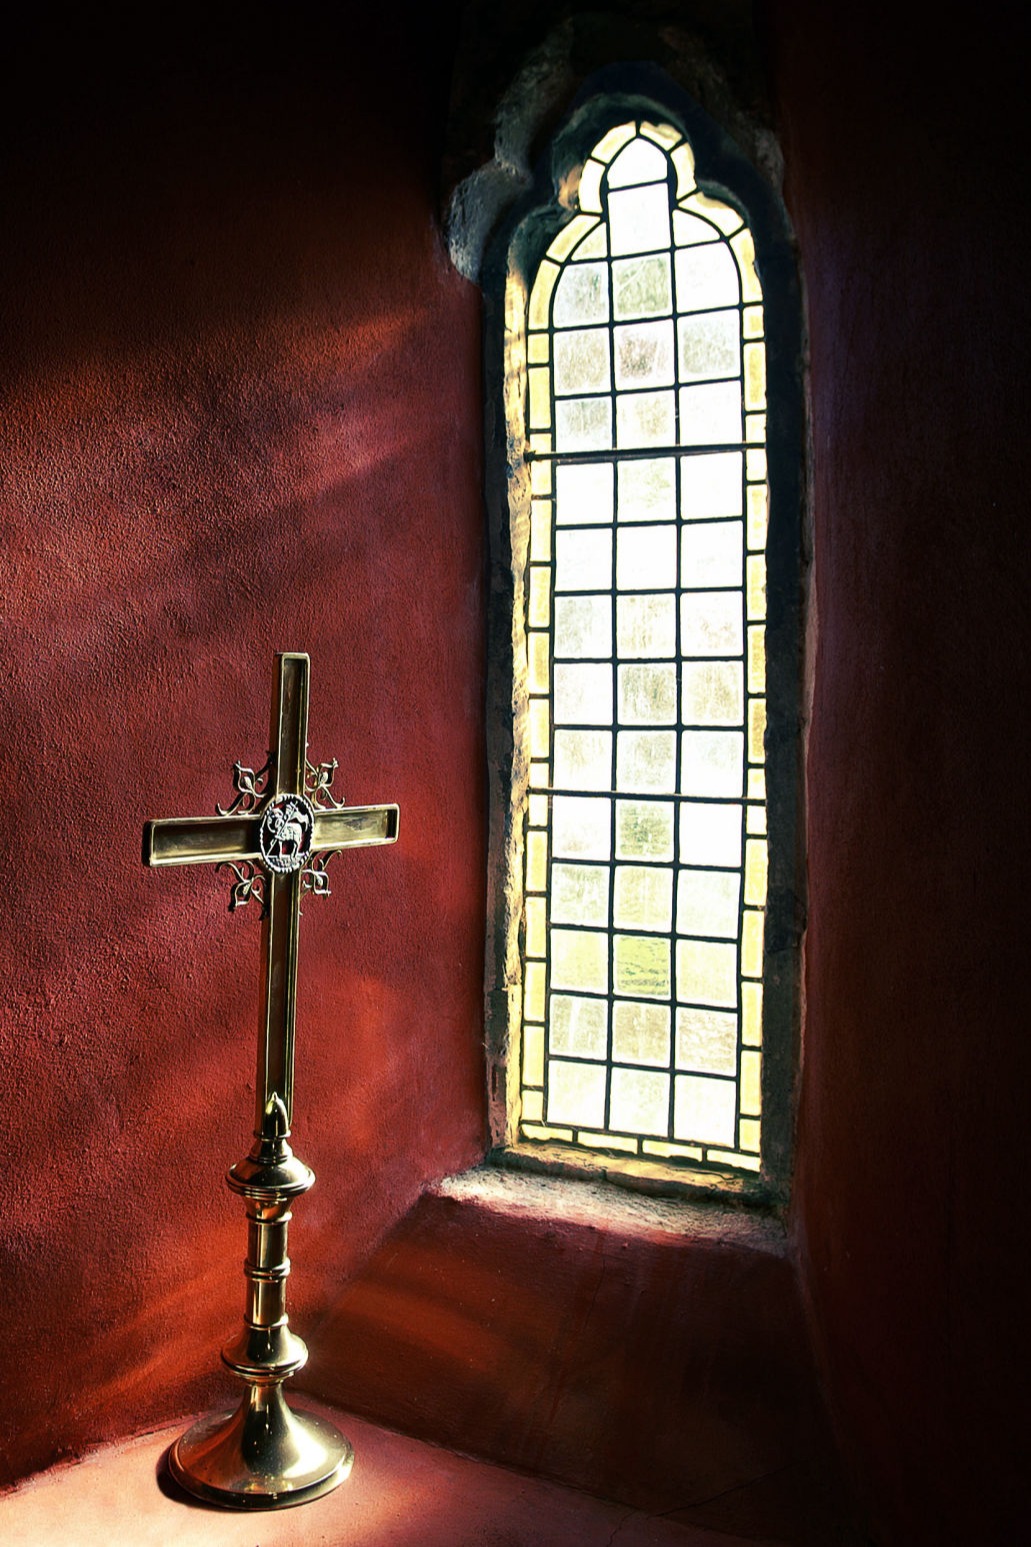 Cross by window